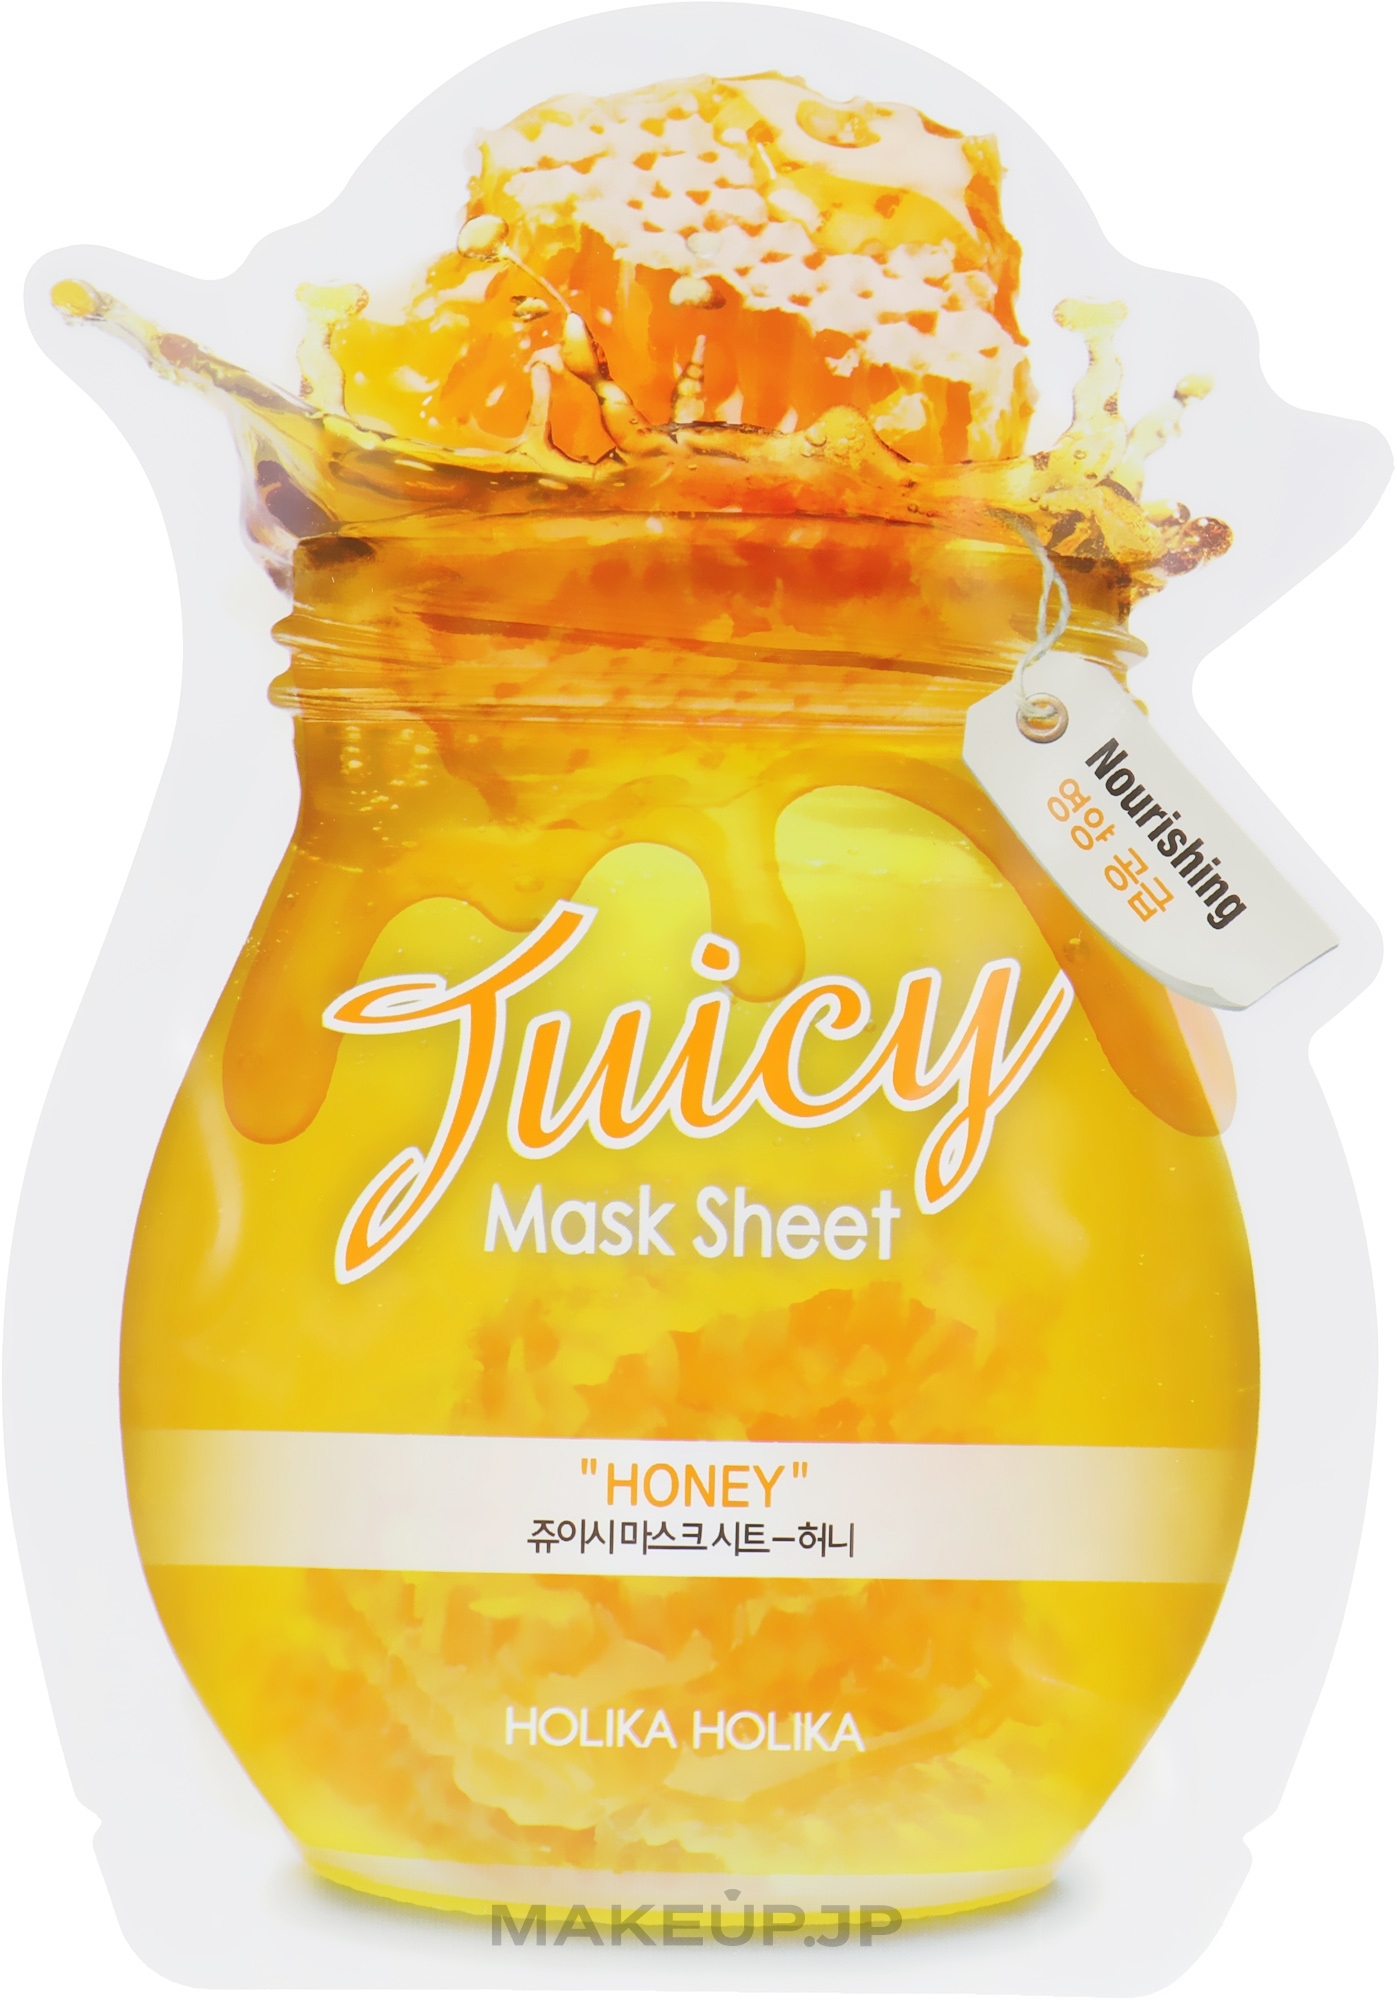 Juicy Sheet Mask with Hiney Extract - Holika Holika Honey Juicy Mask Sheet — photo 20 ml